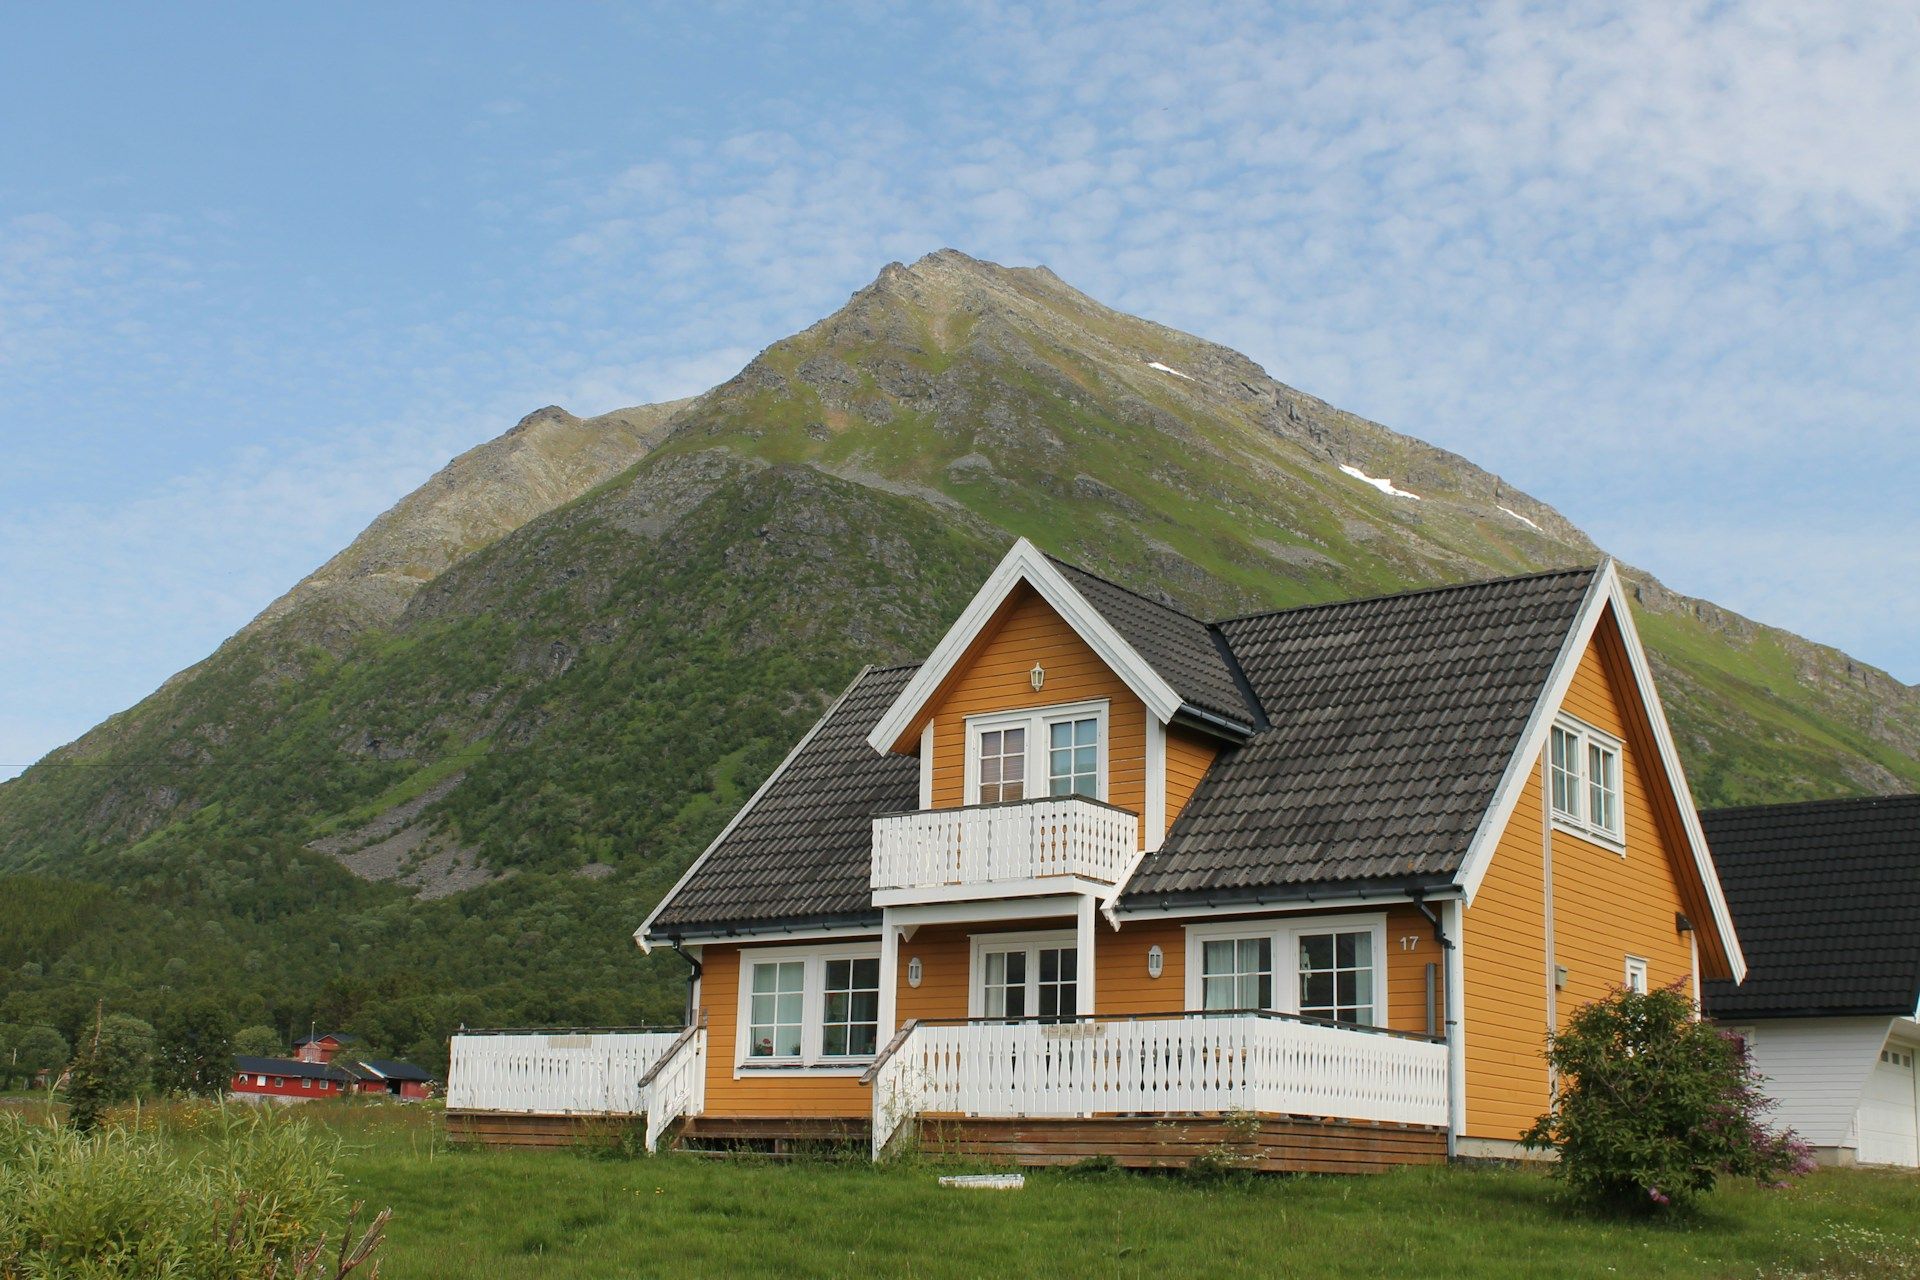 An orange airbnb home